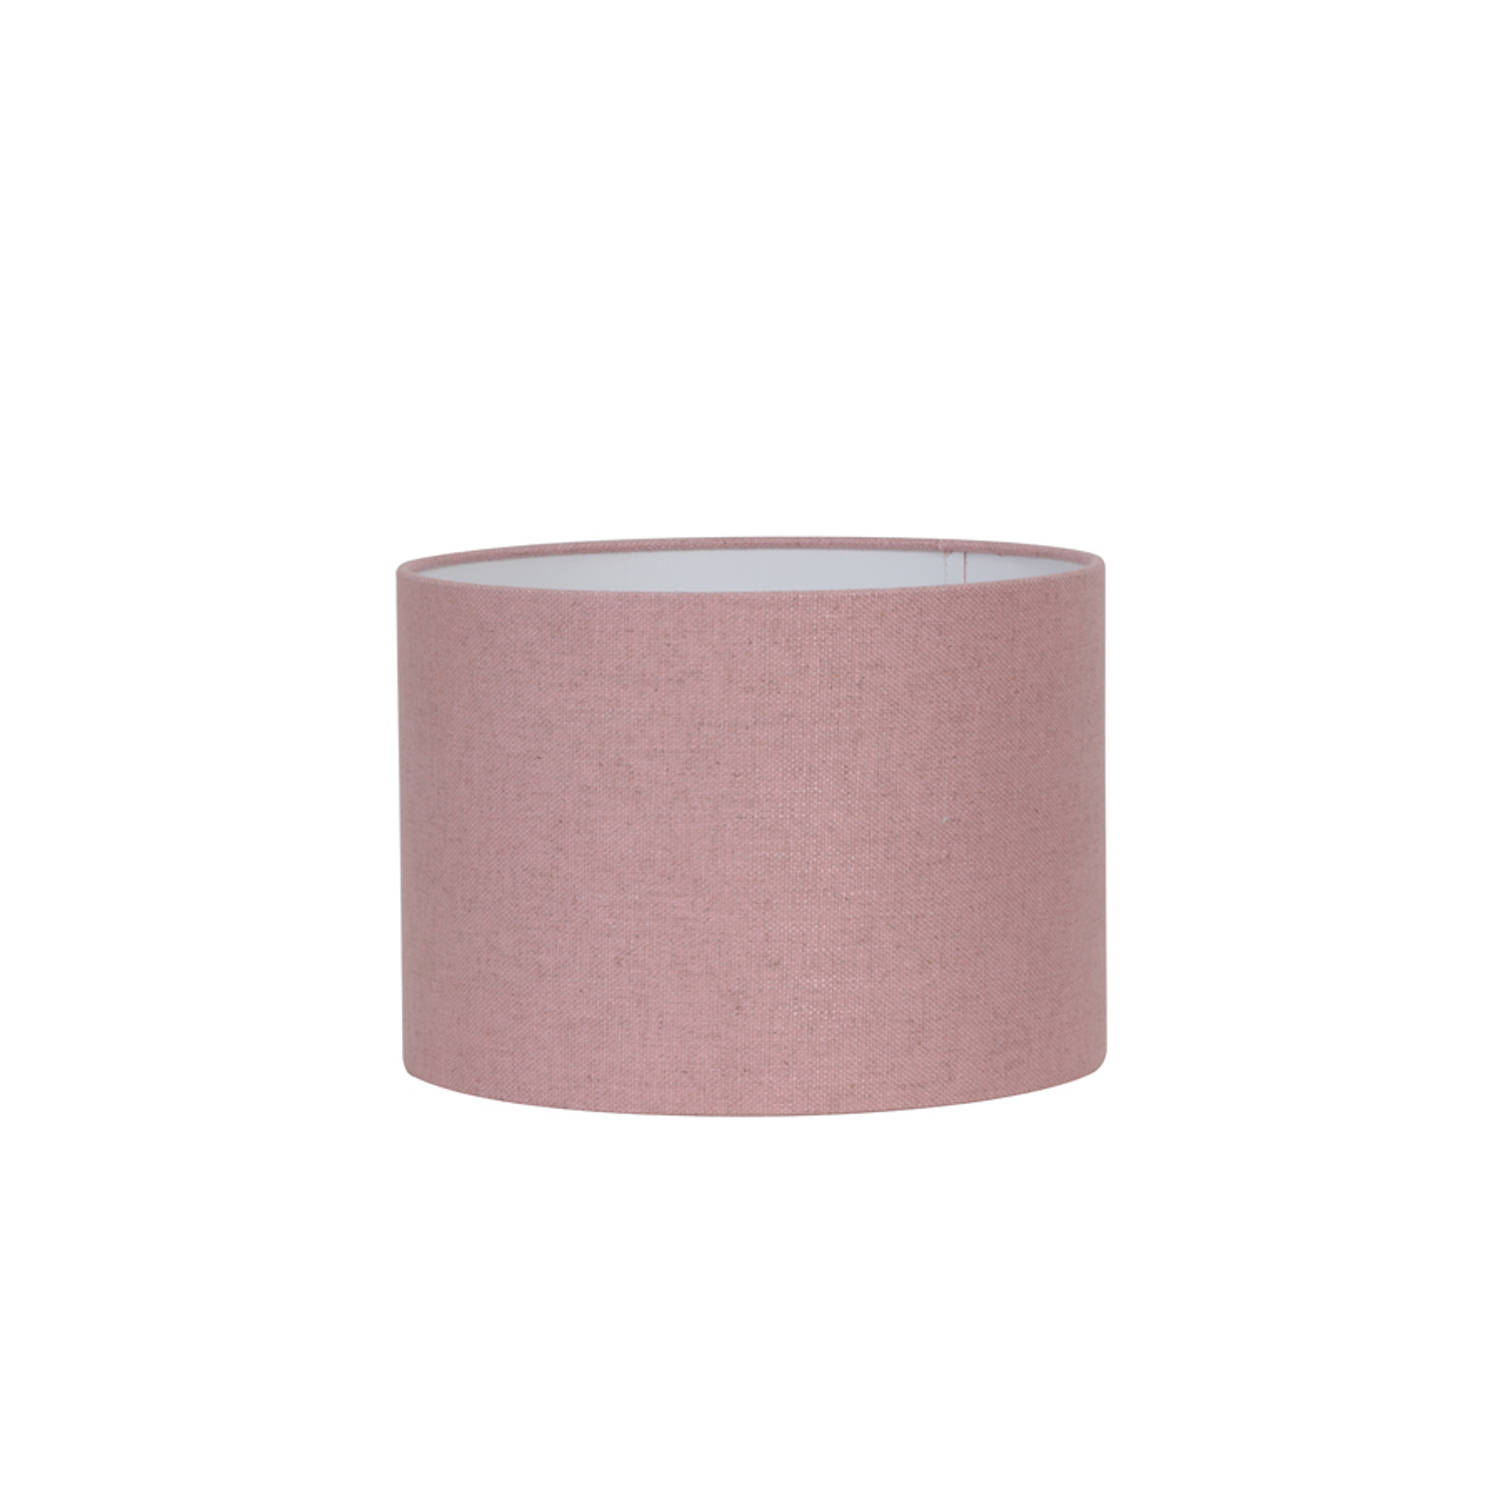 Kap cilinder 25-25-18 cm LIVIGNO roze Light & Living